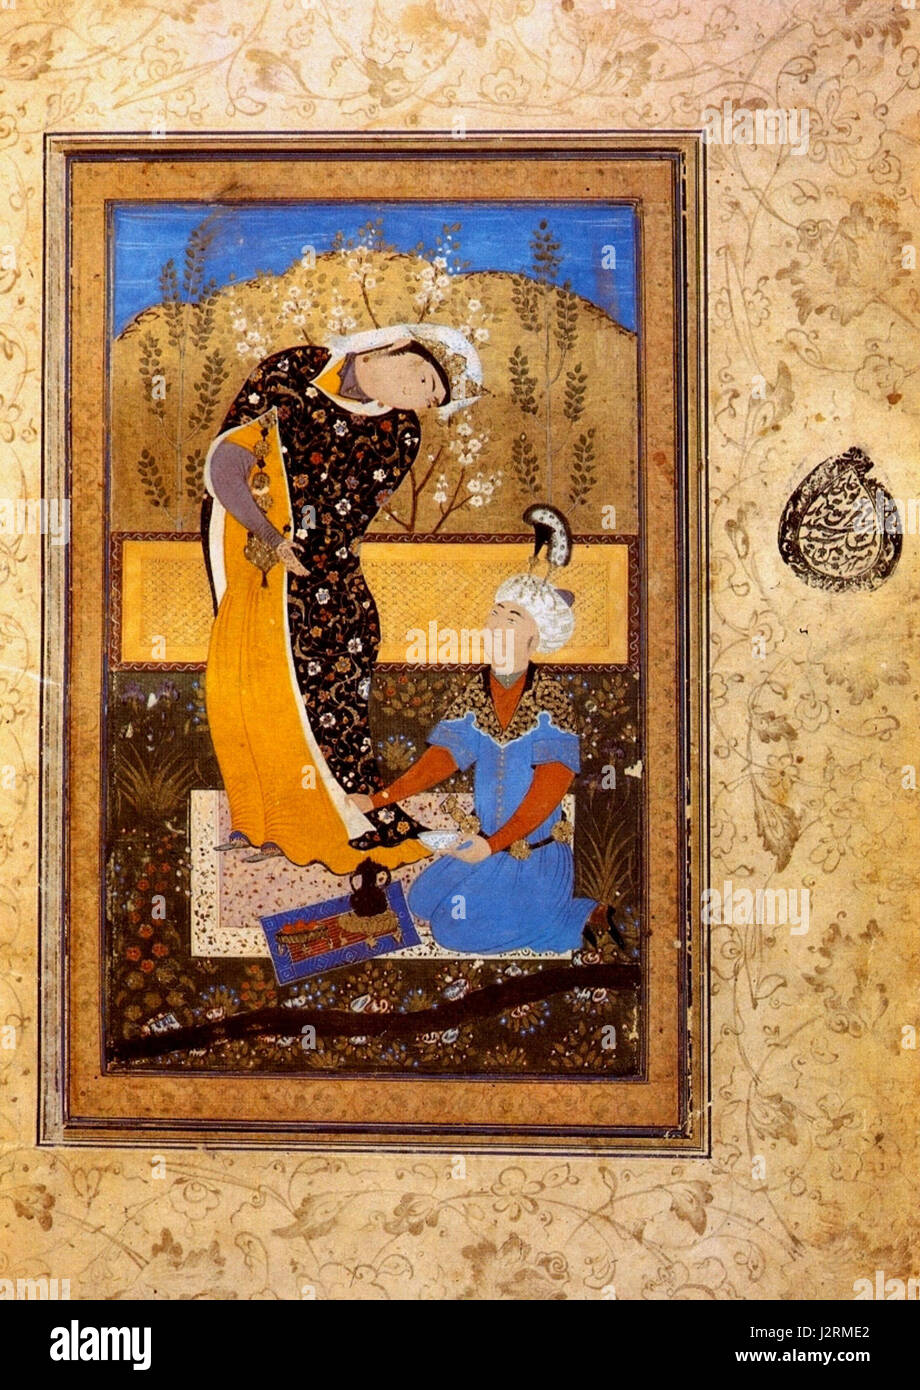 Abdullah (attr.), amantes, (lado derecho), Bukhara1570s, Biblioteca Pública, San Petersburgo, Rusia Foto de stock